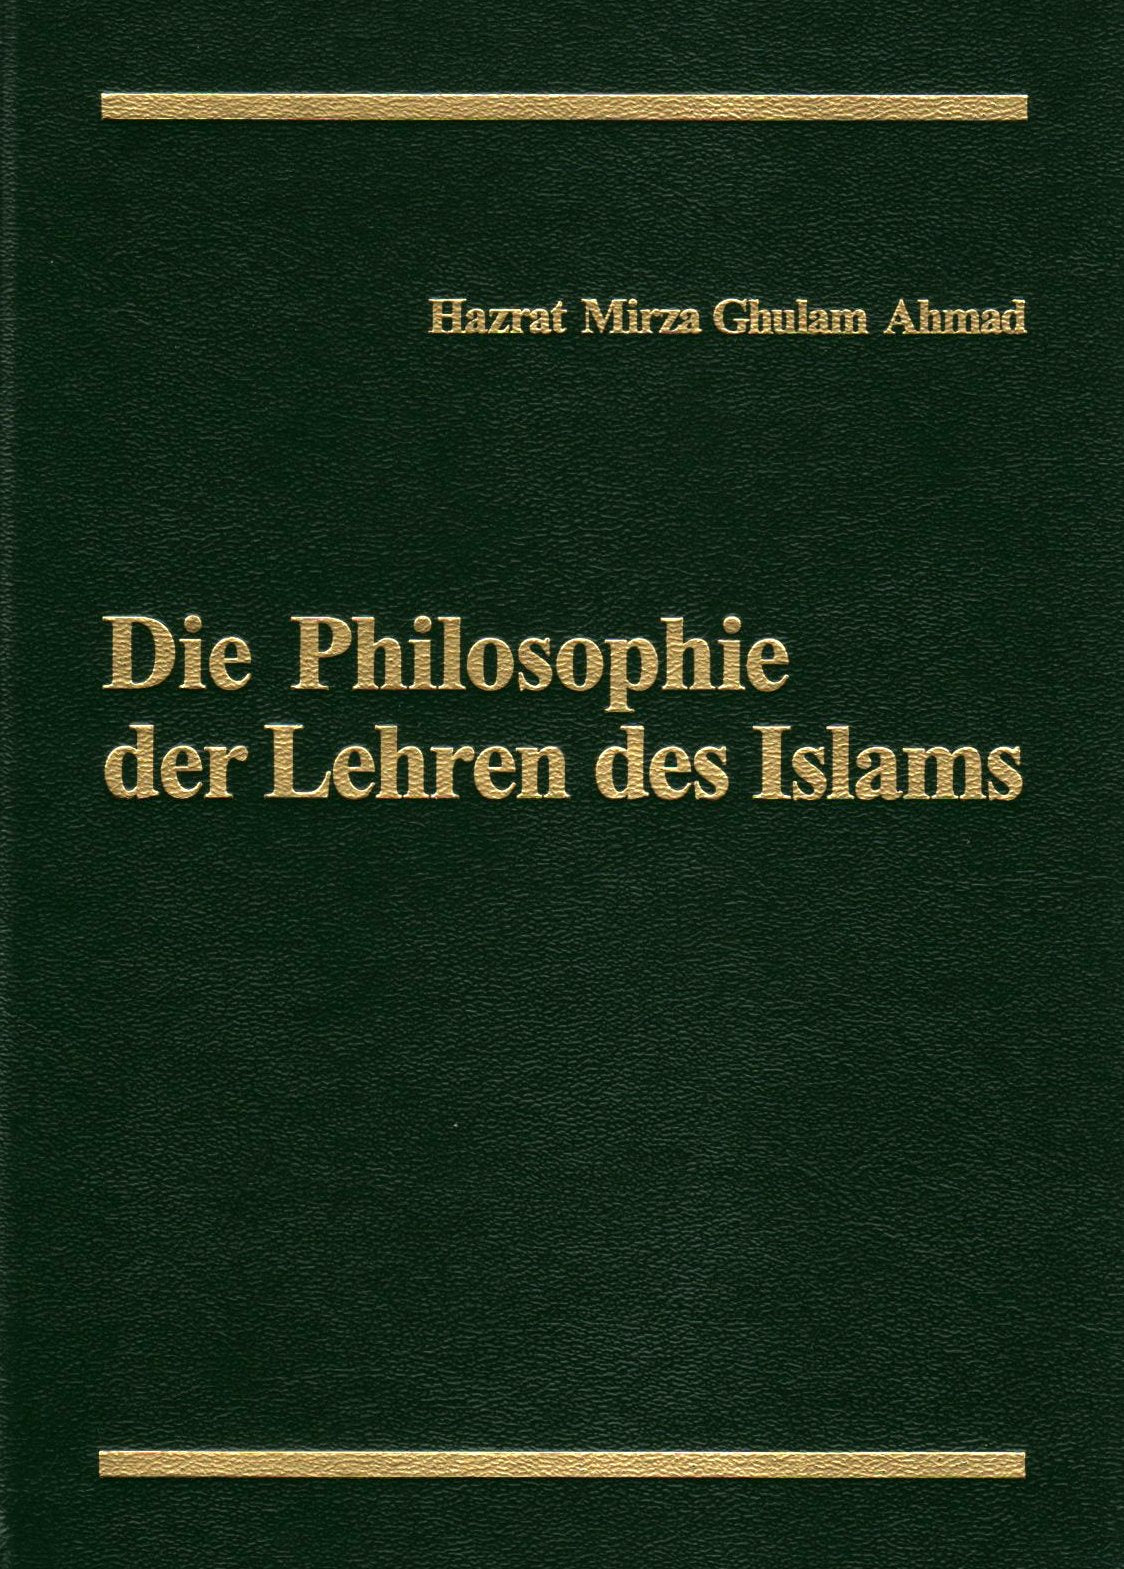 Die Philosophie der Lehren des Islams.